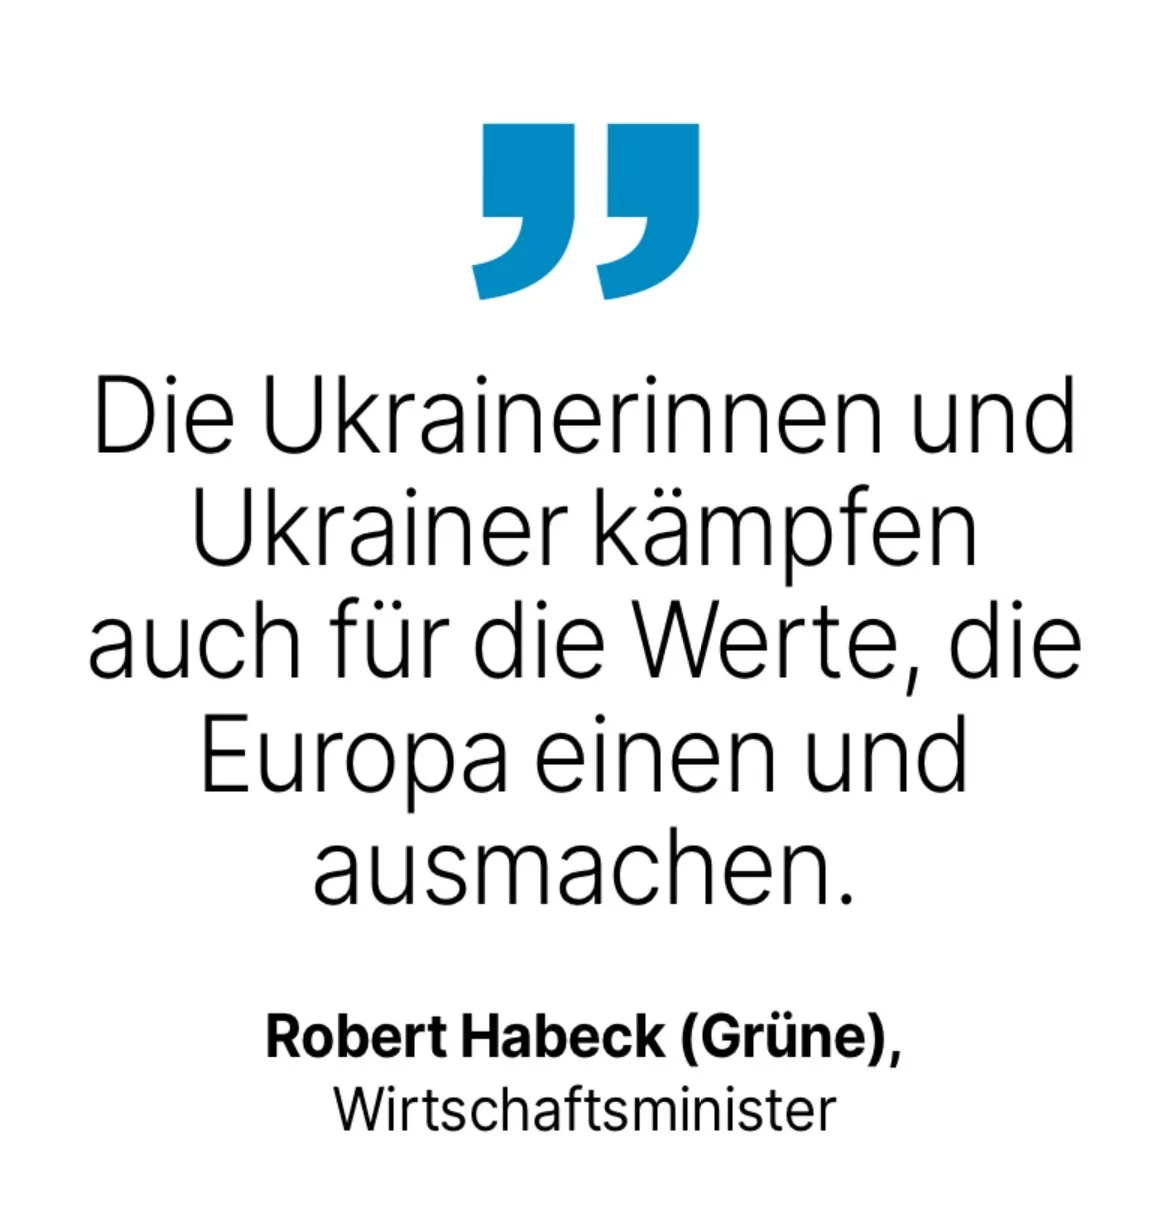 Robert Habeck (Grüne), Wirtschaftsminister: Die Ukrainerinnen und Ukrainer kämpfen auch für die Werte, die Europa einen und ausmachen.